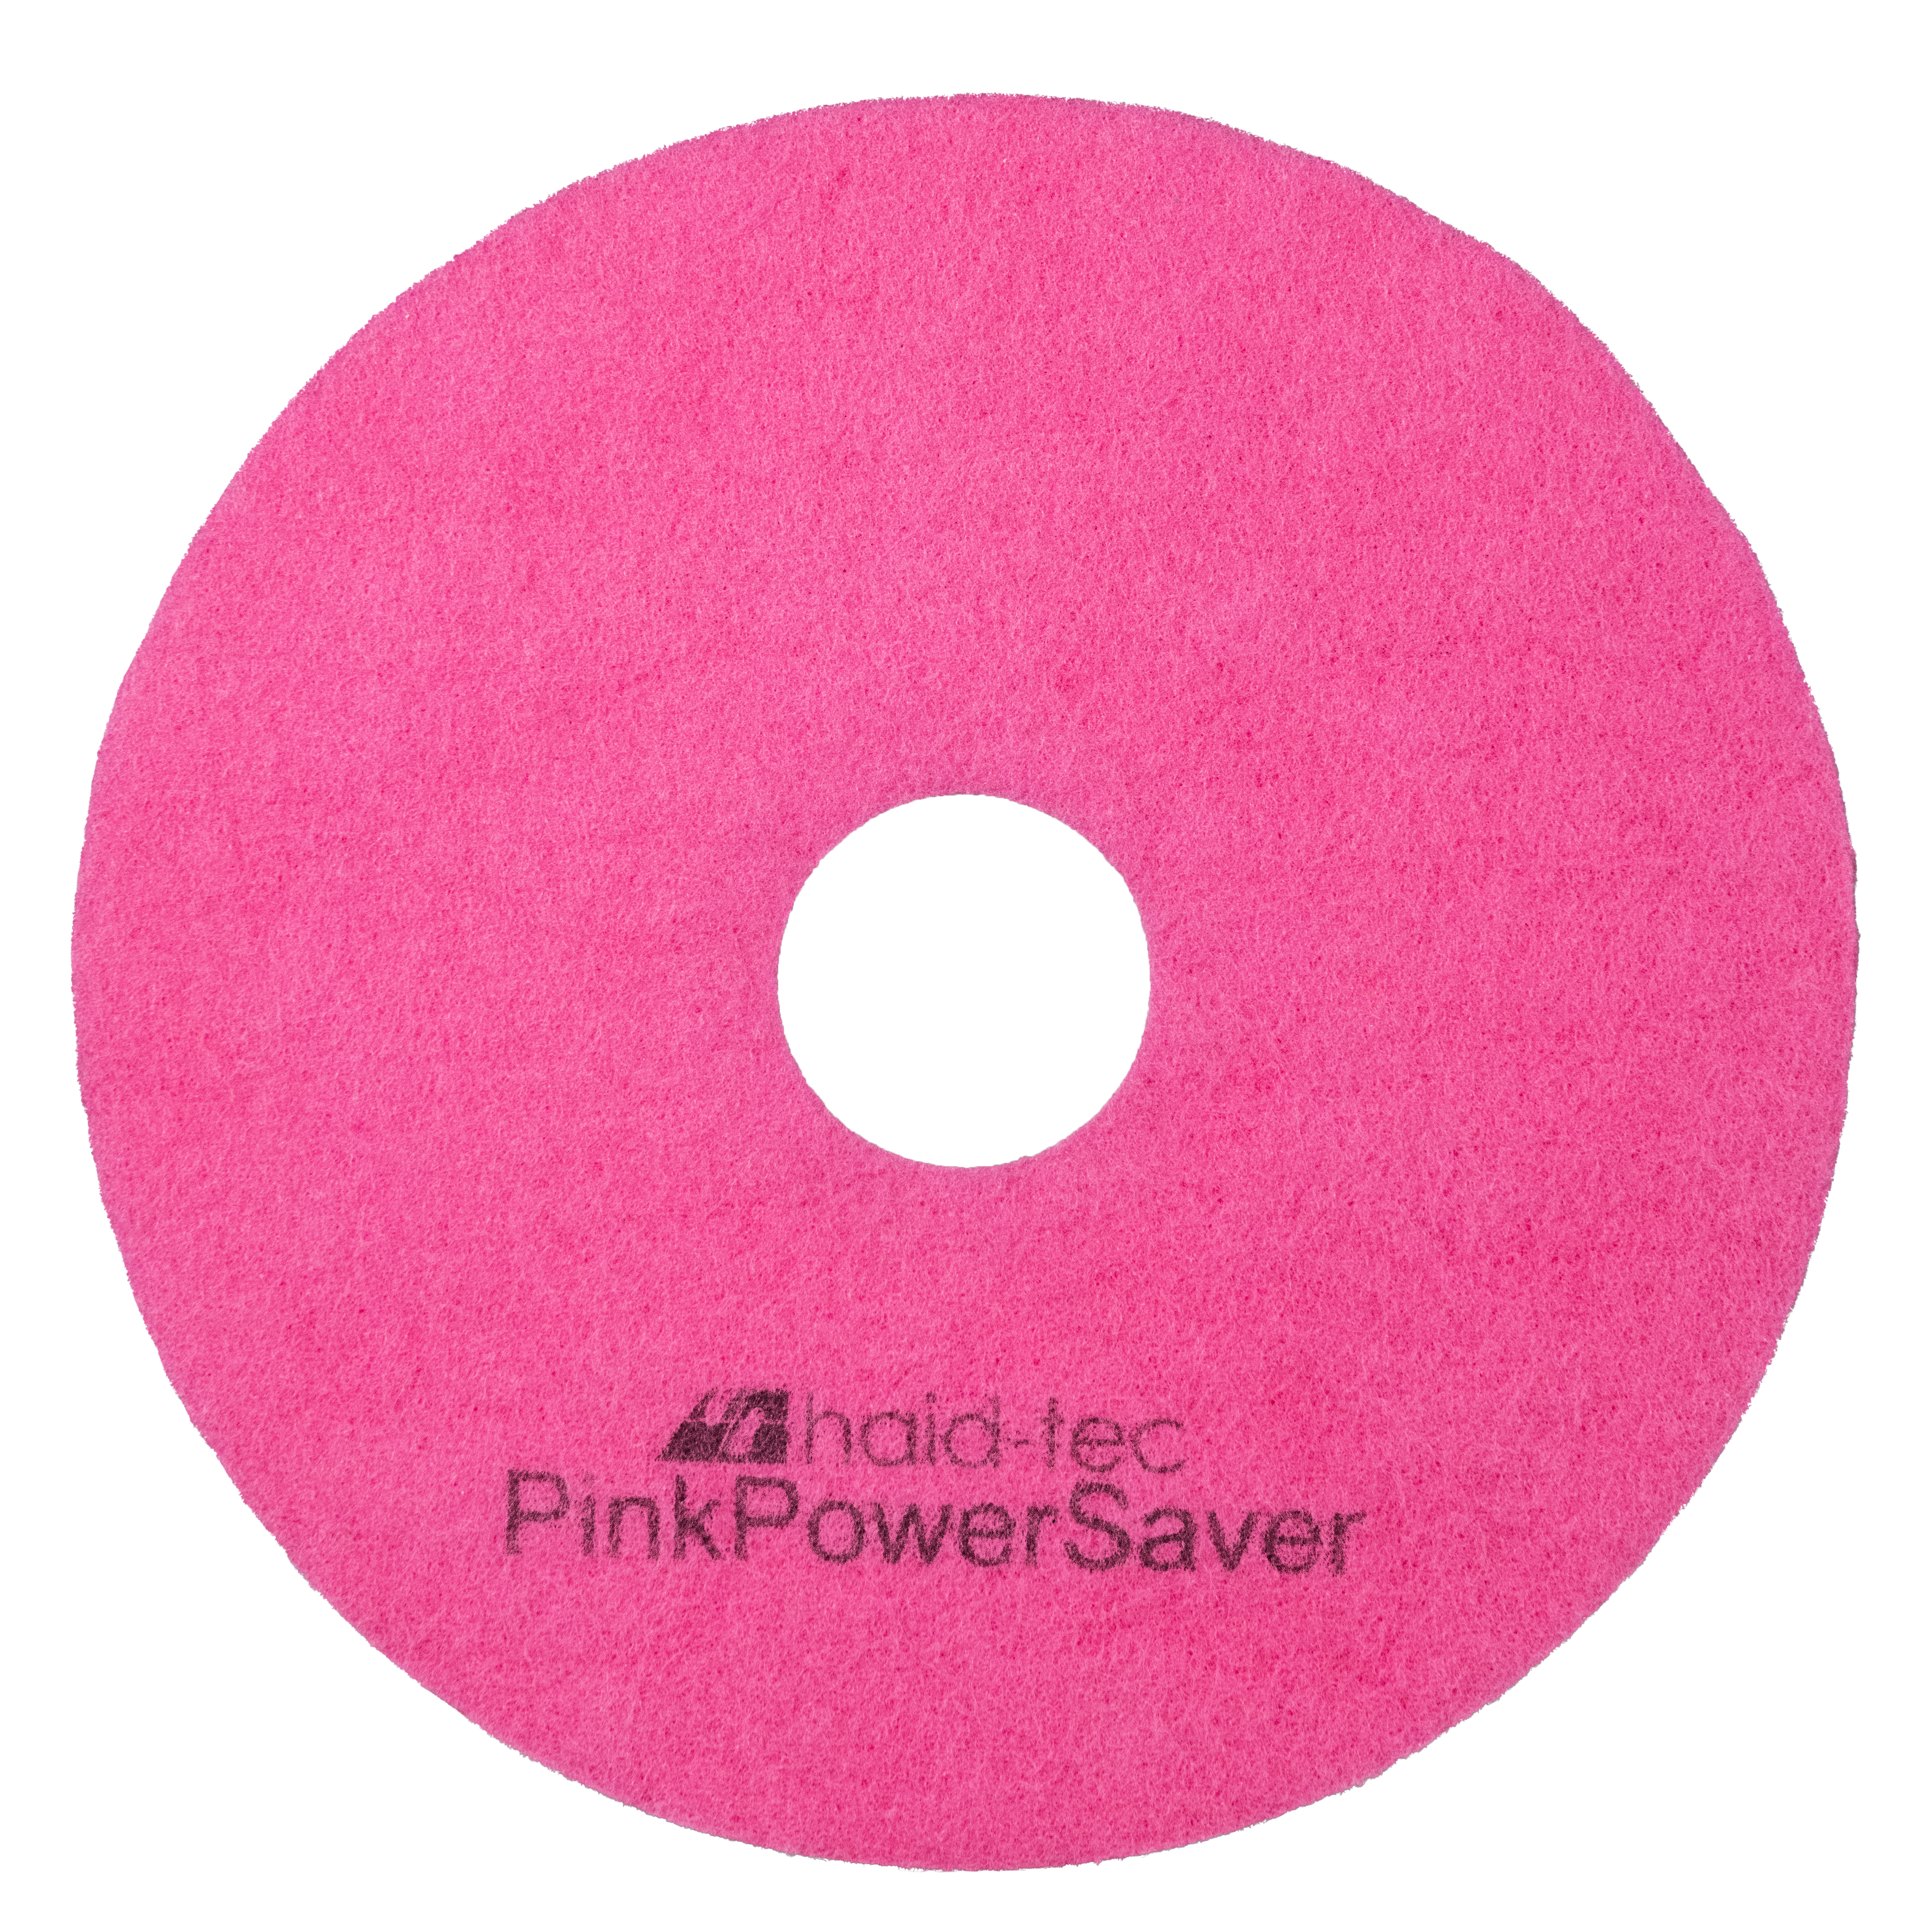 PinkPowerSaver Pad 8.6Zoll/218mm für Taski swingo 250 µicro, Pad für Kompakt-Scheuersaugmaschine - Melaminpad für die Intensiv- und Unterhaltsreinigung